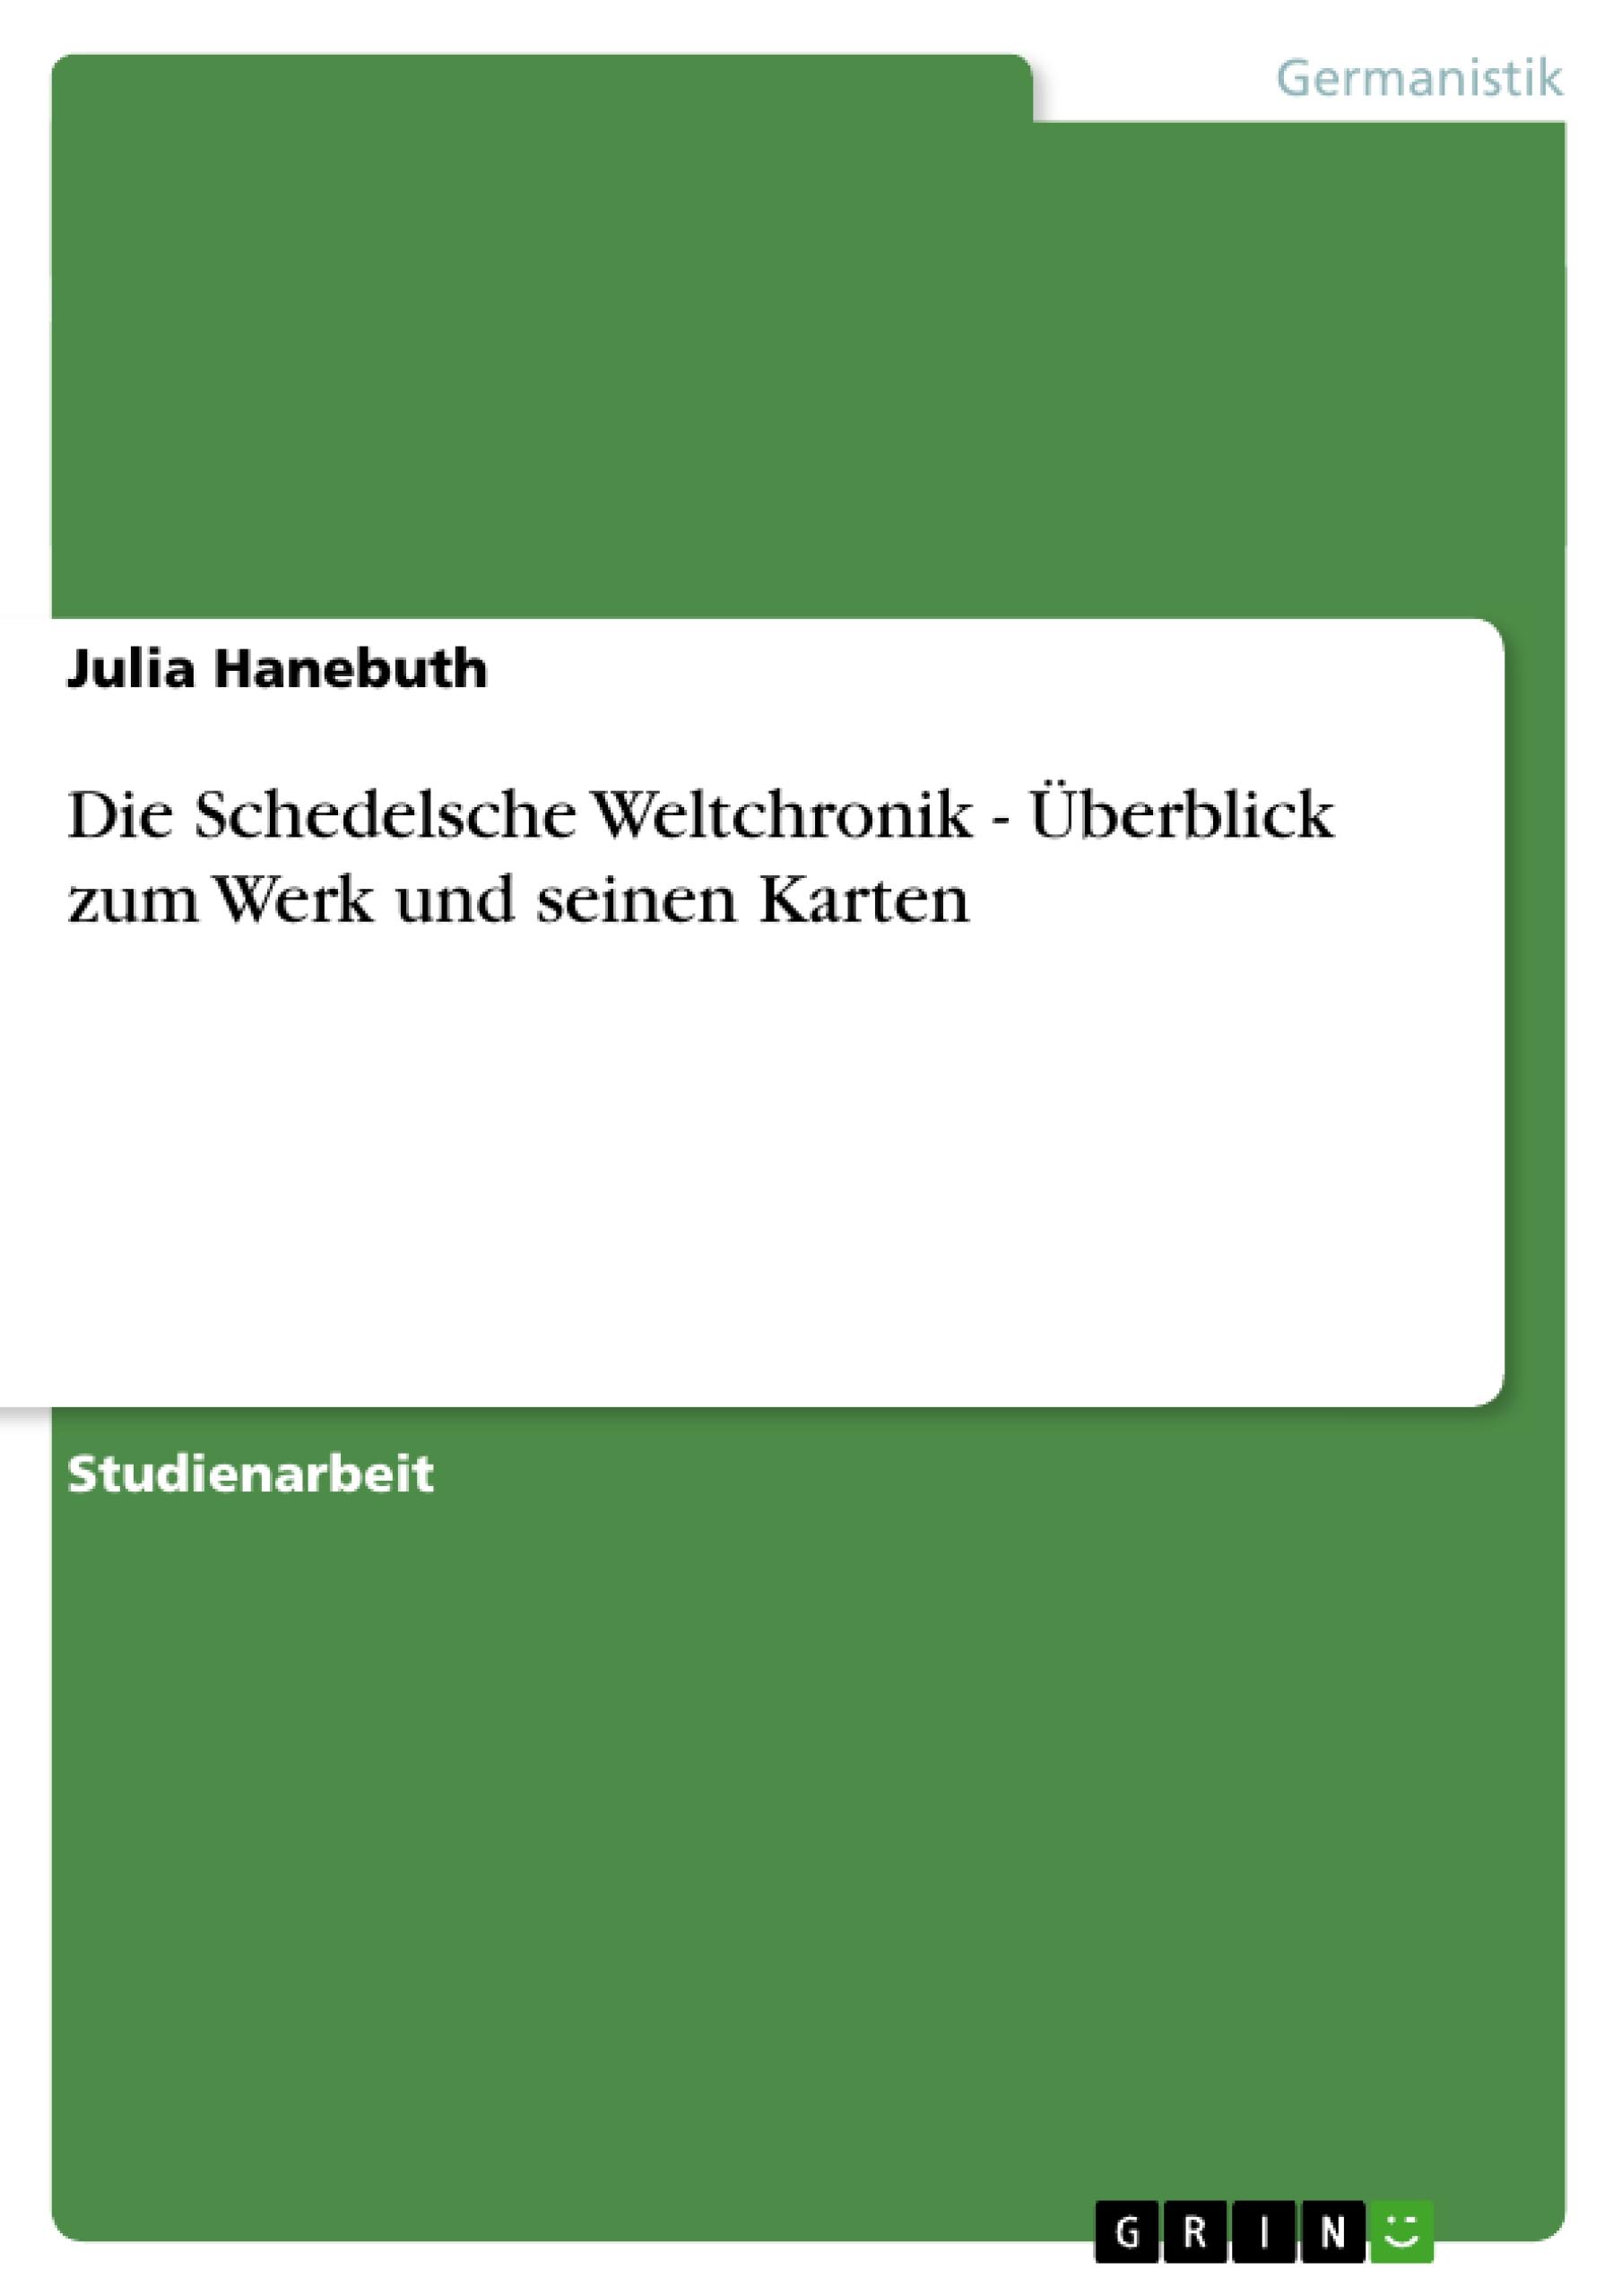 Die Schedelsche Weltchronik - Ueberblick zum Werk und seinen Karten - Hanebuth, Julia